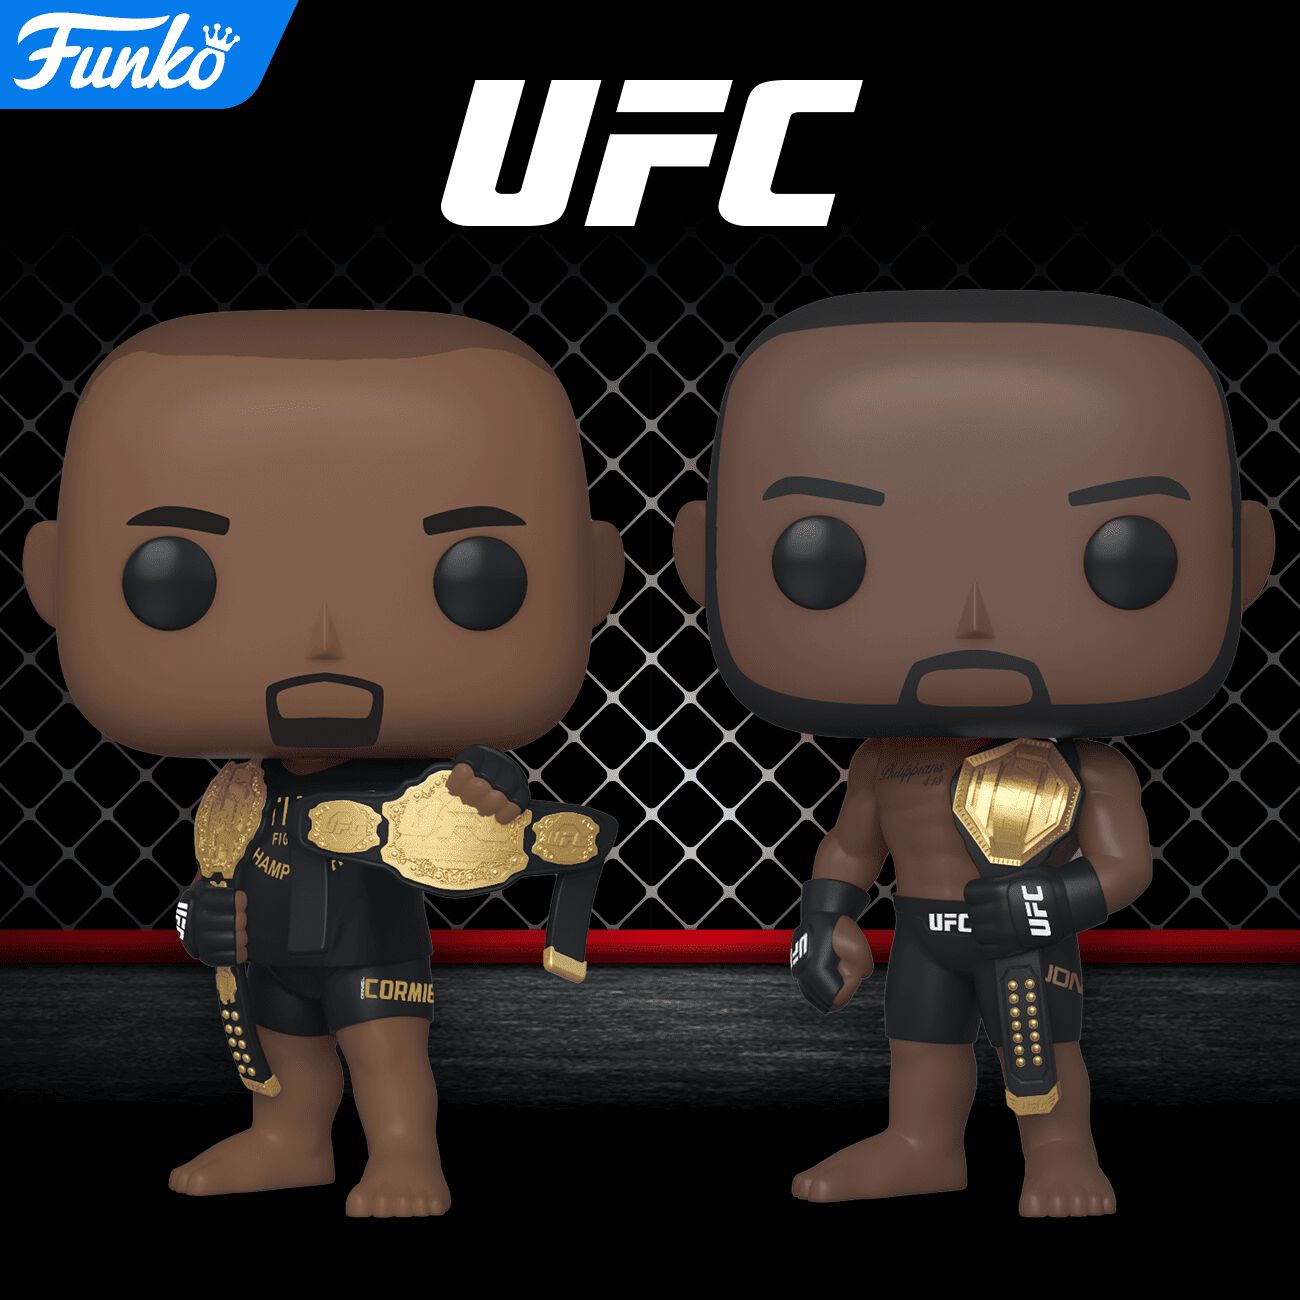 Coming Soon: Pop! UFC!